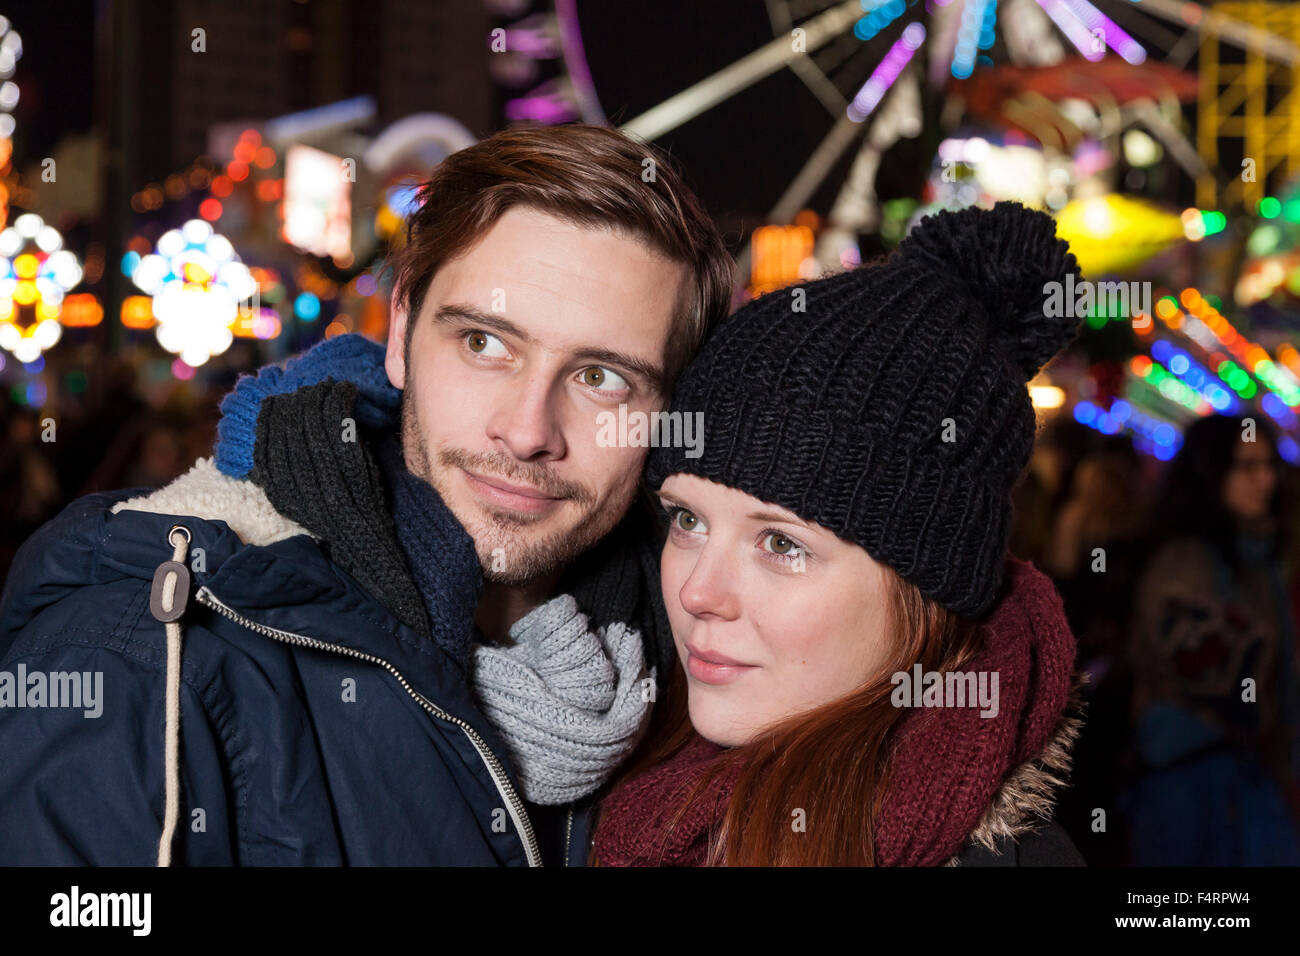 couple peer on parish fair in winter Stock Photo